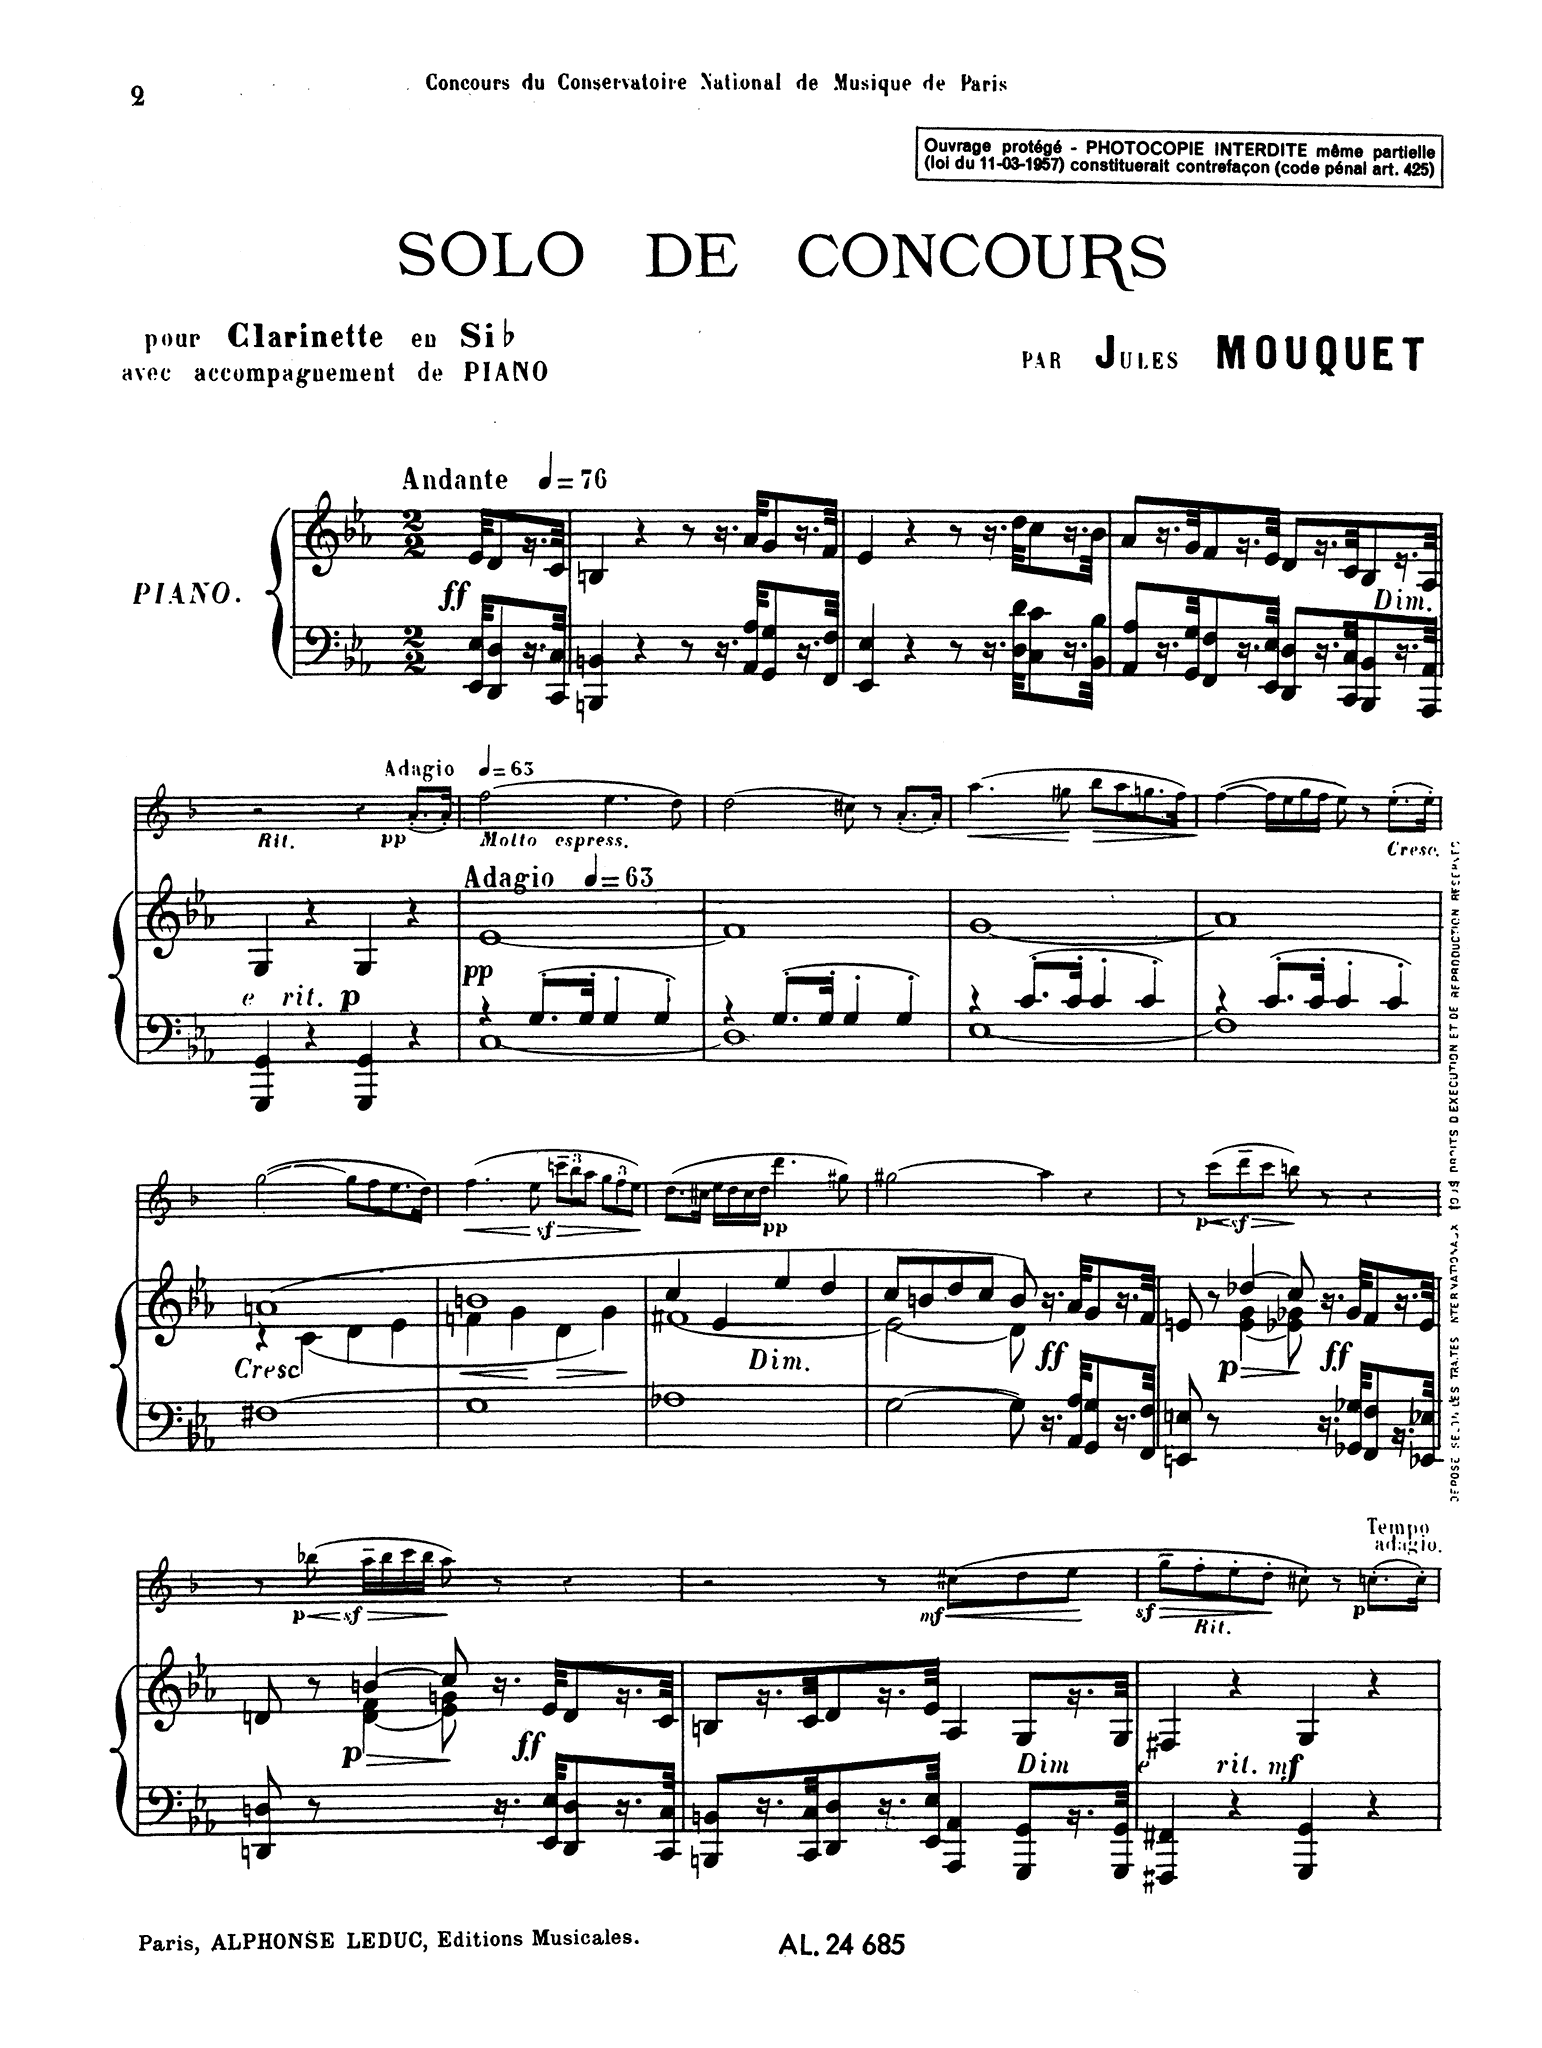 Mouquet Solo de Concours Score